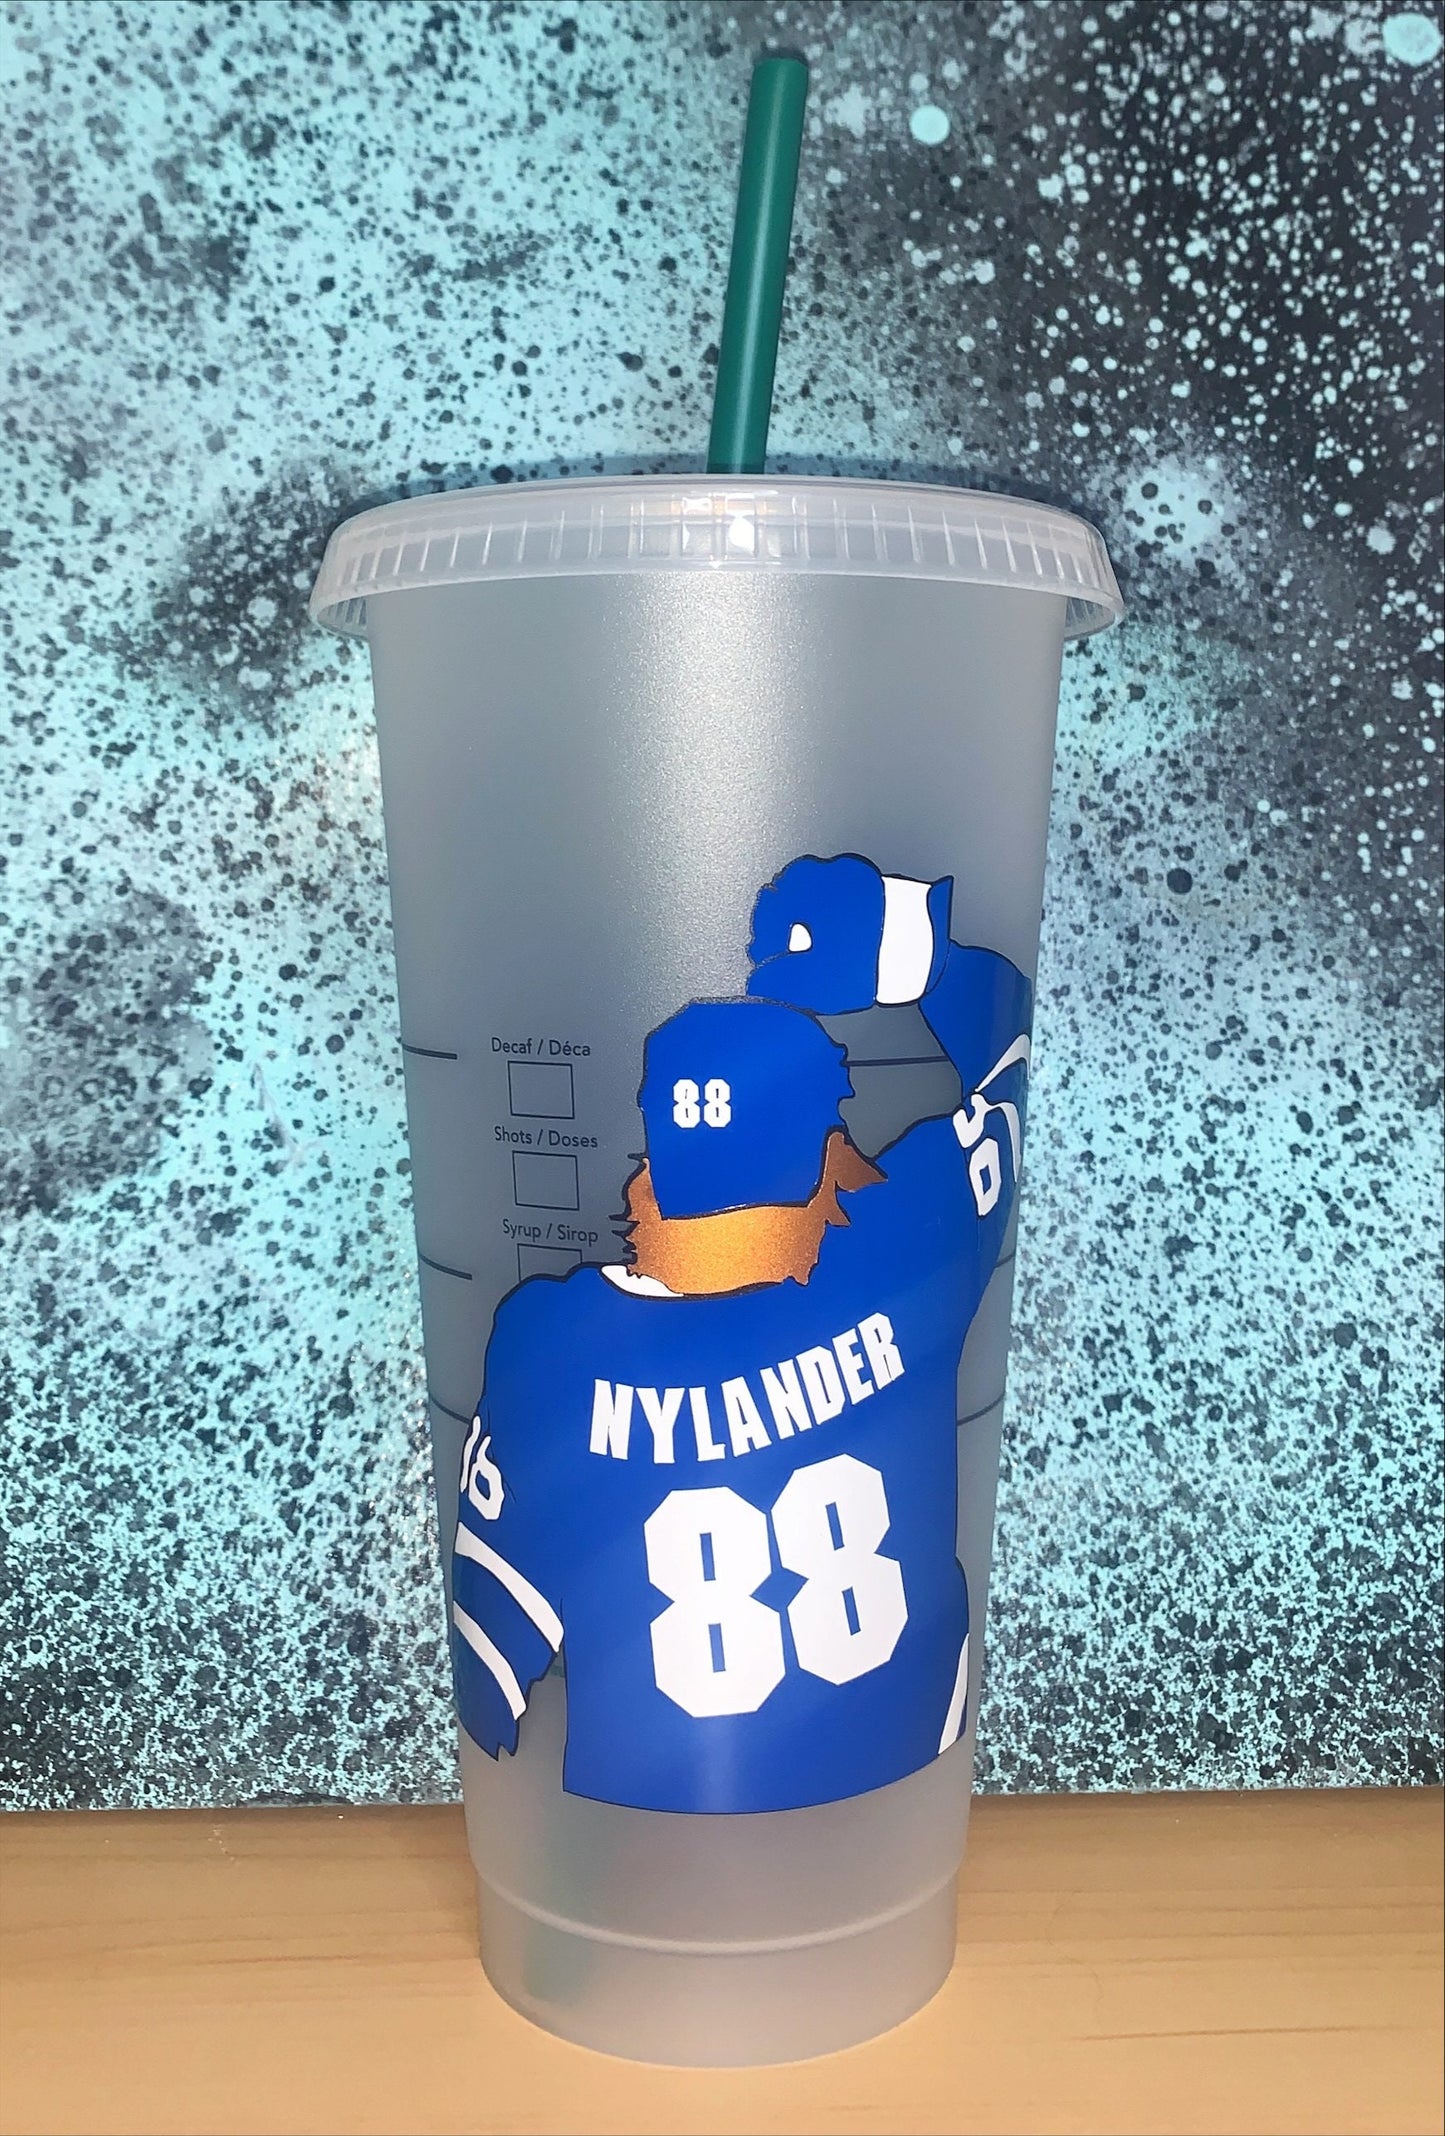 Nylander Cup